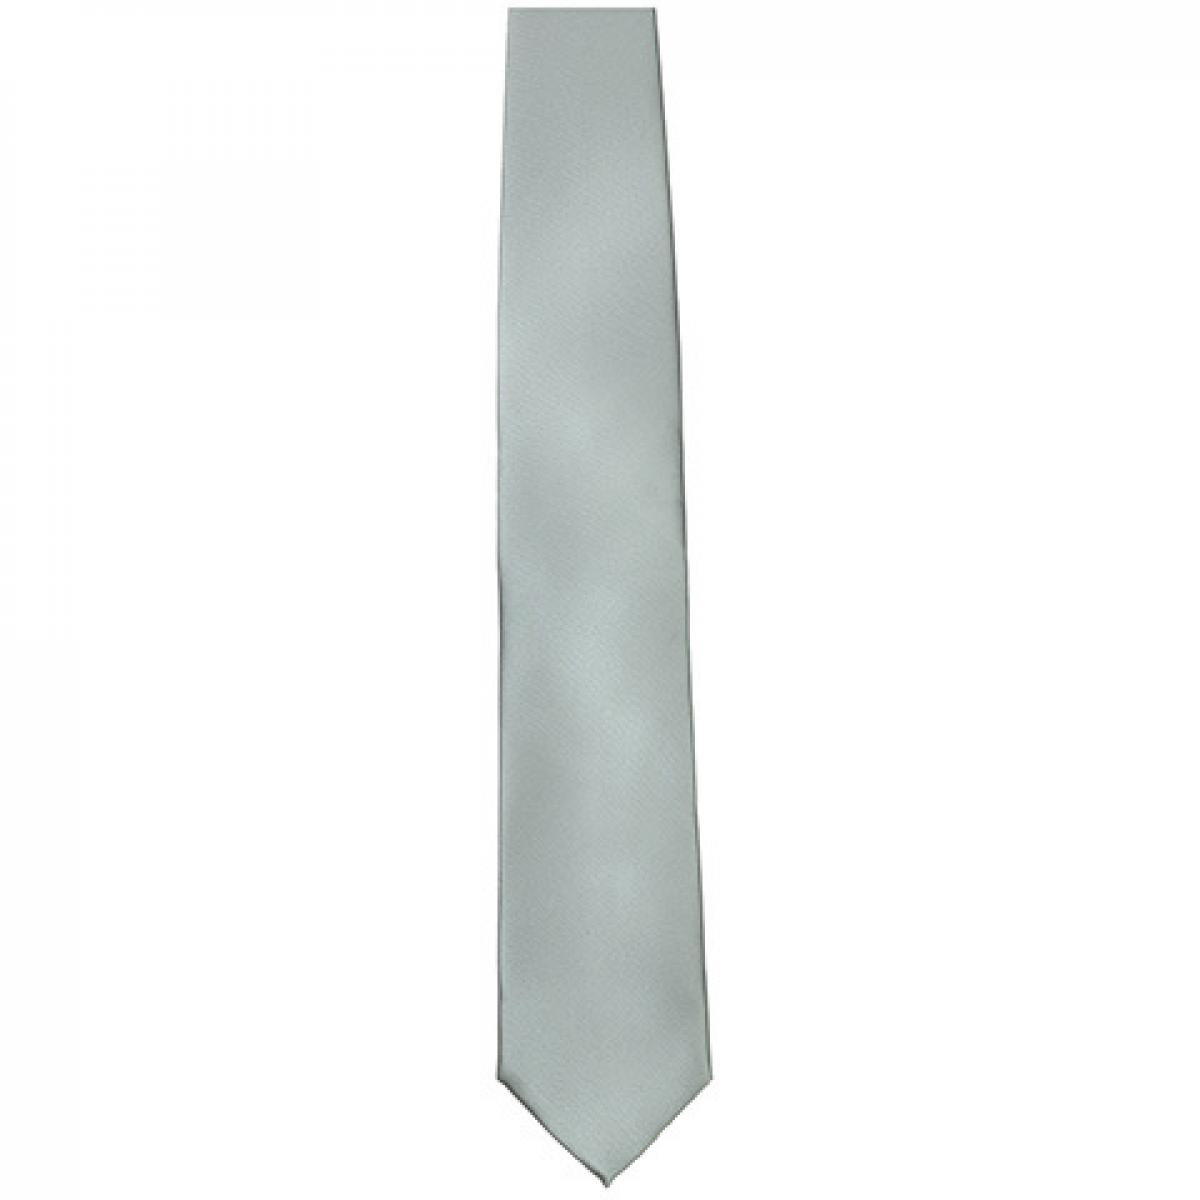 Hersteller: TYTO Herstellernummer: TT901 Artikelbezeichnung: Satin Tie / 144 x 8,5cm /  Zu 100% von Hand genäht Farbe: Silver